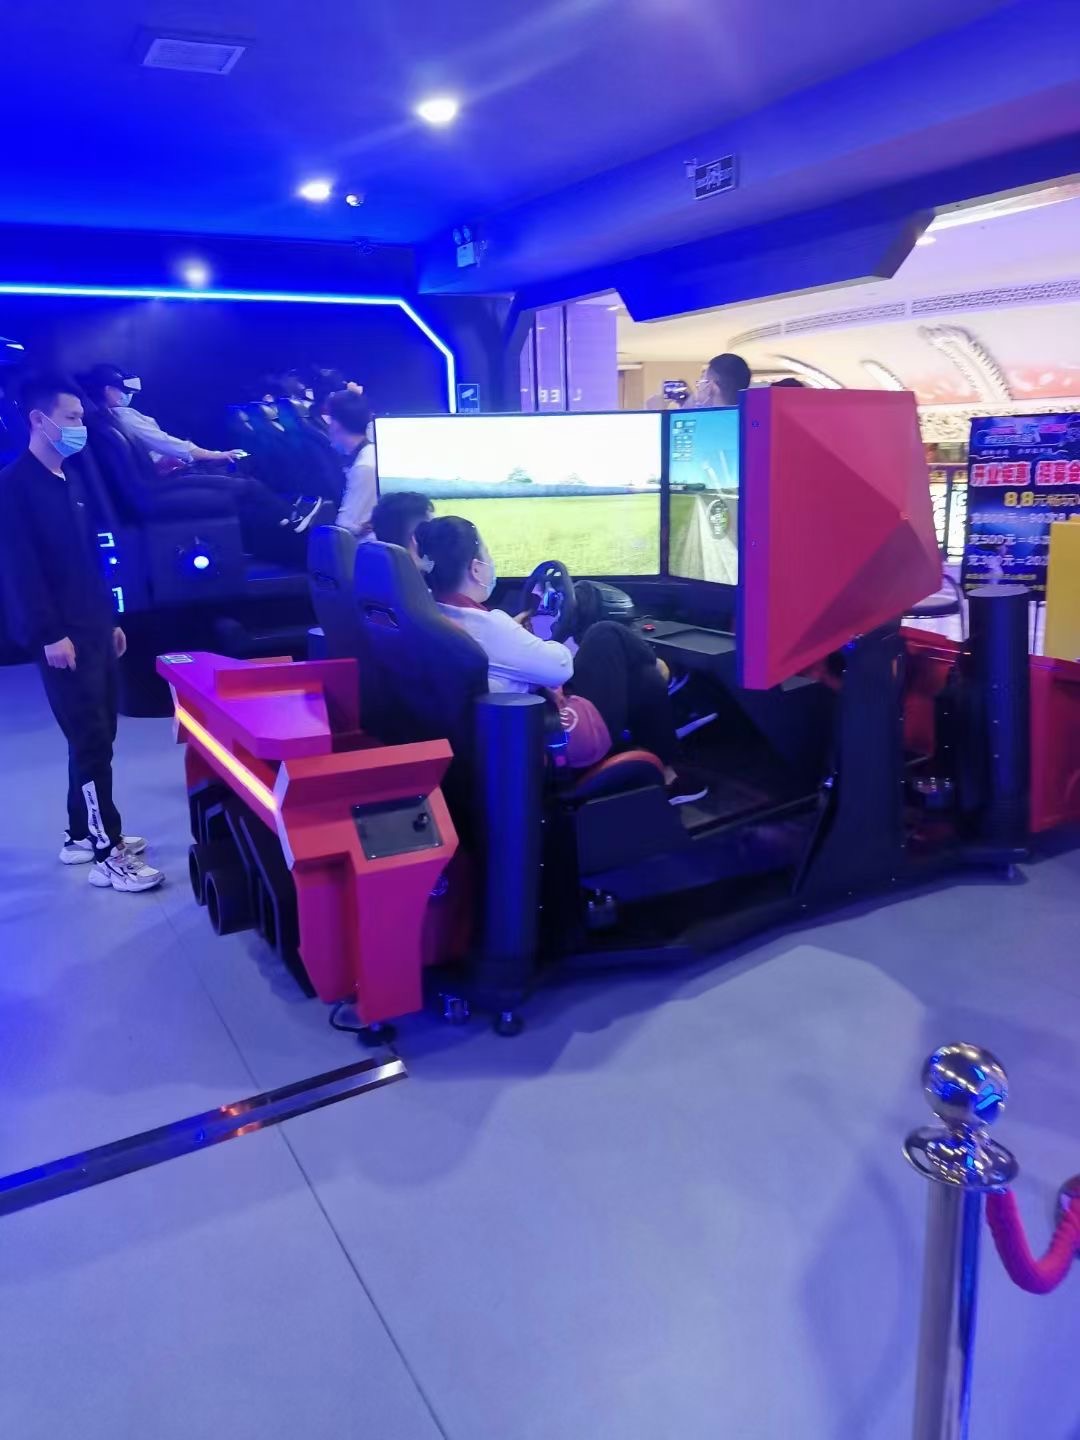 آلات التسلية آلات الألعاب آلات ألعاب سيارات السباق معدات ألعاب محاكاة القيادة